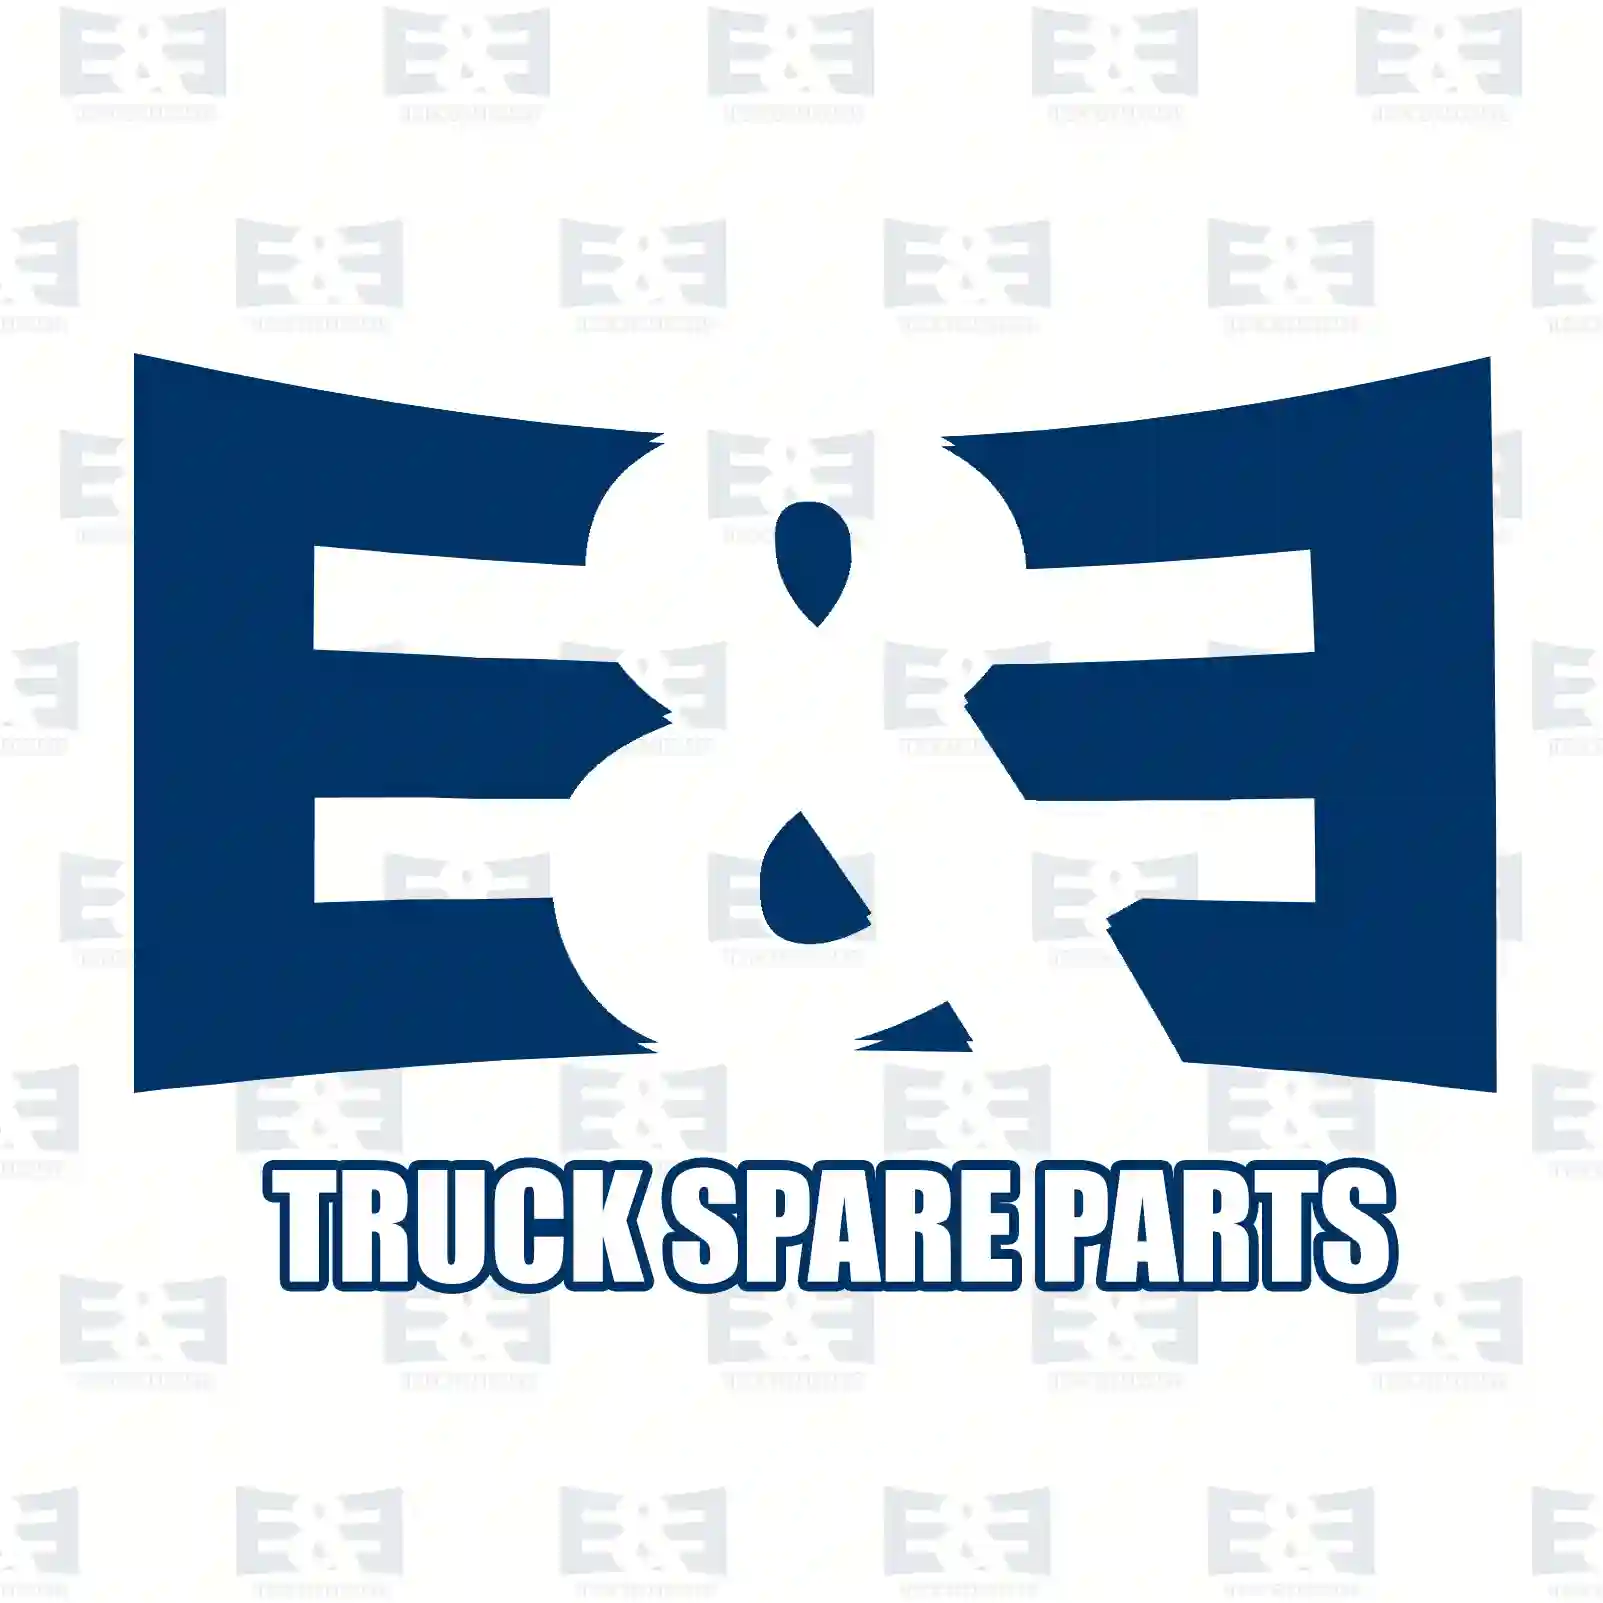 Nut, 2E2286141, 06110642317, 06111850317, 000934014003, 000934014006 ||  2E2286141 E&E Truck Spare Parts | Truck Spare Parts, Auotomotive Spare Parts Nut, 2E2286141, 06110642317, 06111850317, 000934014003, 000934014006 ||  2E2286141 E&E Truck Spare Parts | Truck Spare Parts, Auotomotive Spare Parts